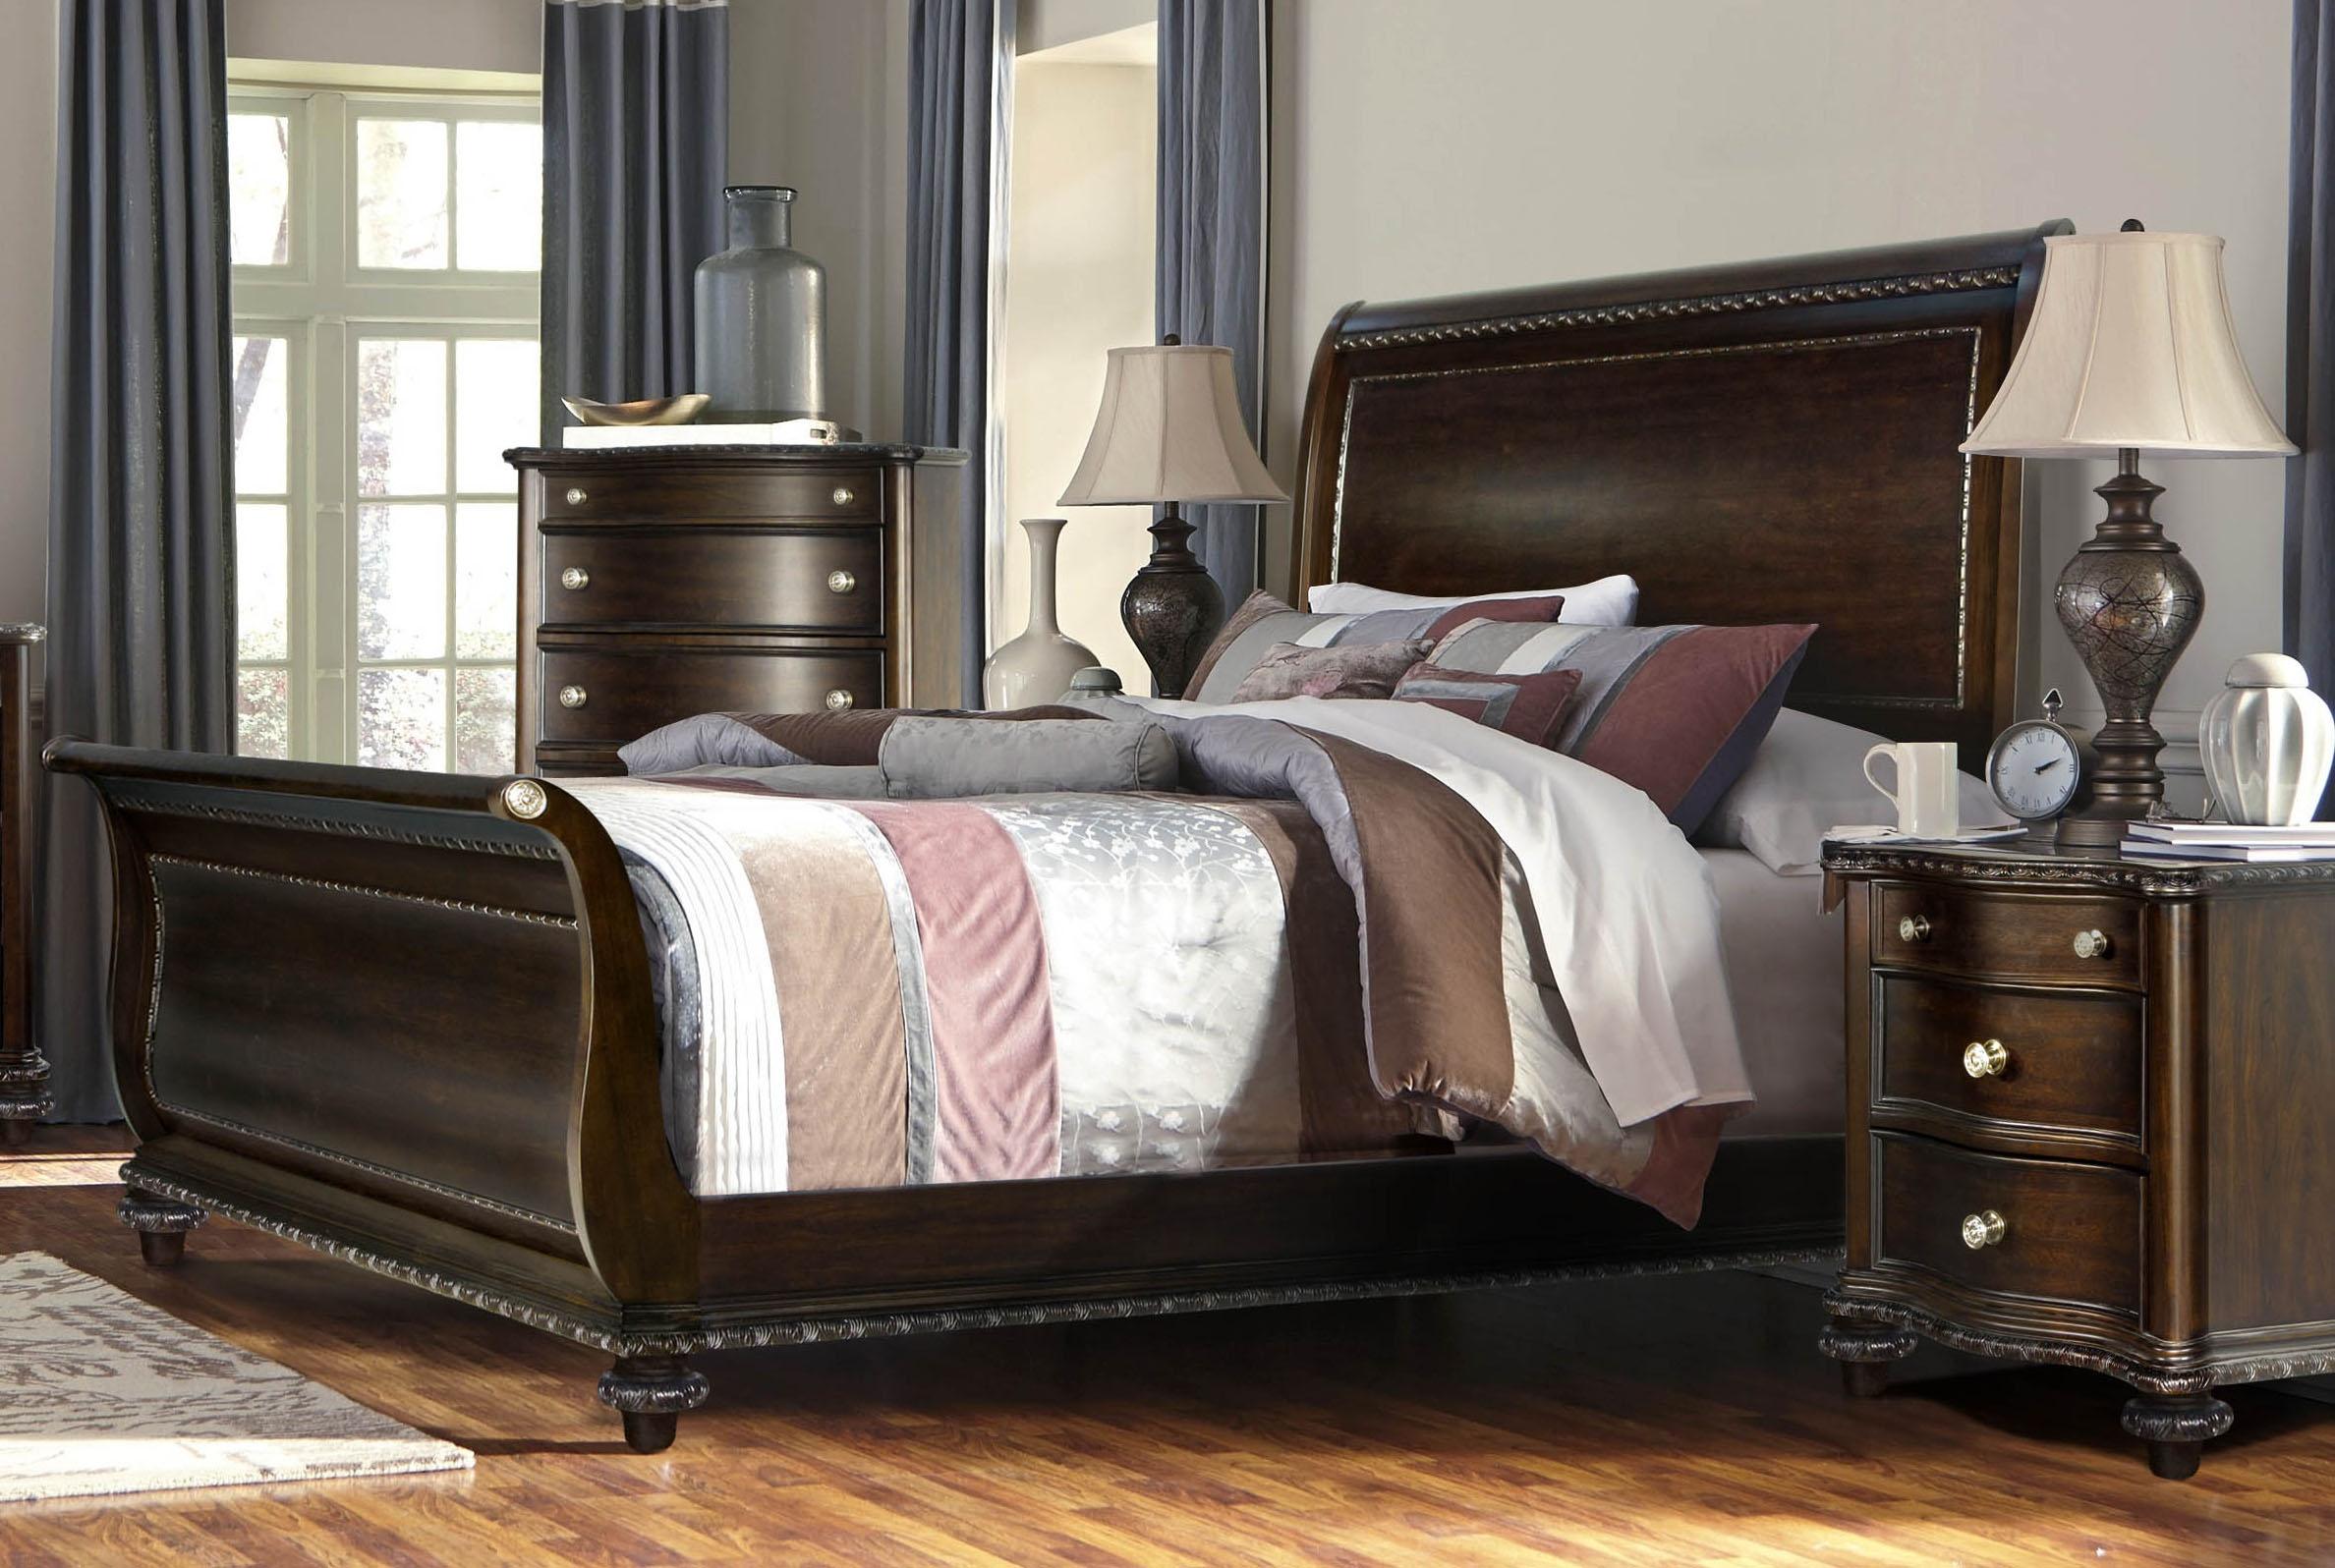 

    
McFerran B195-EK Traditional Dark Walnut Wood Finish King Bedroom Set 5Pcs
